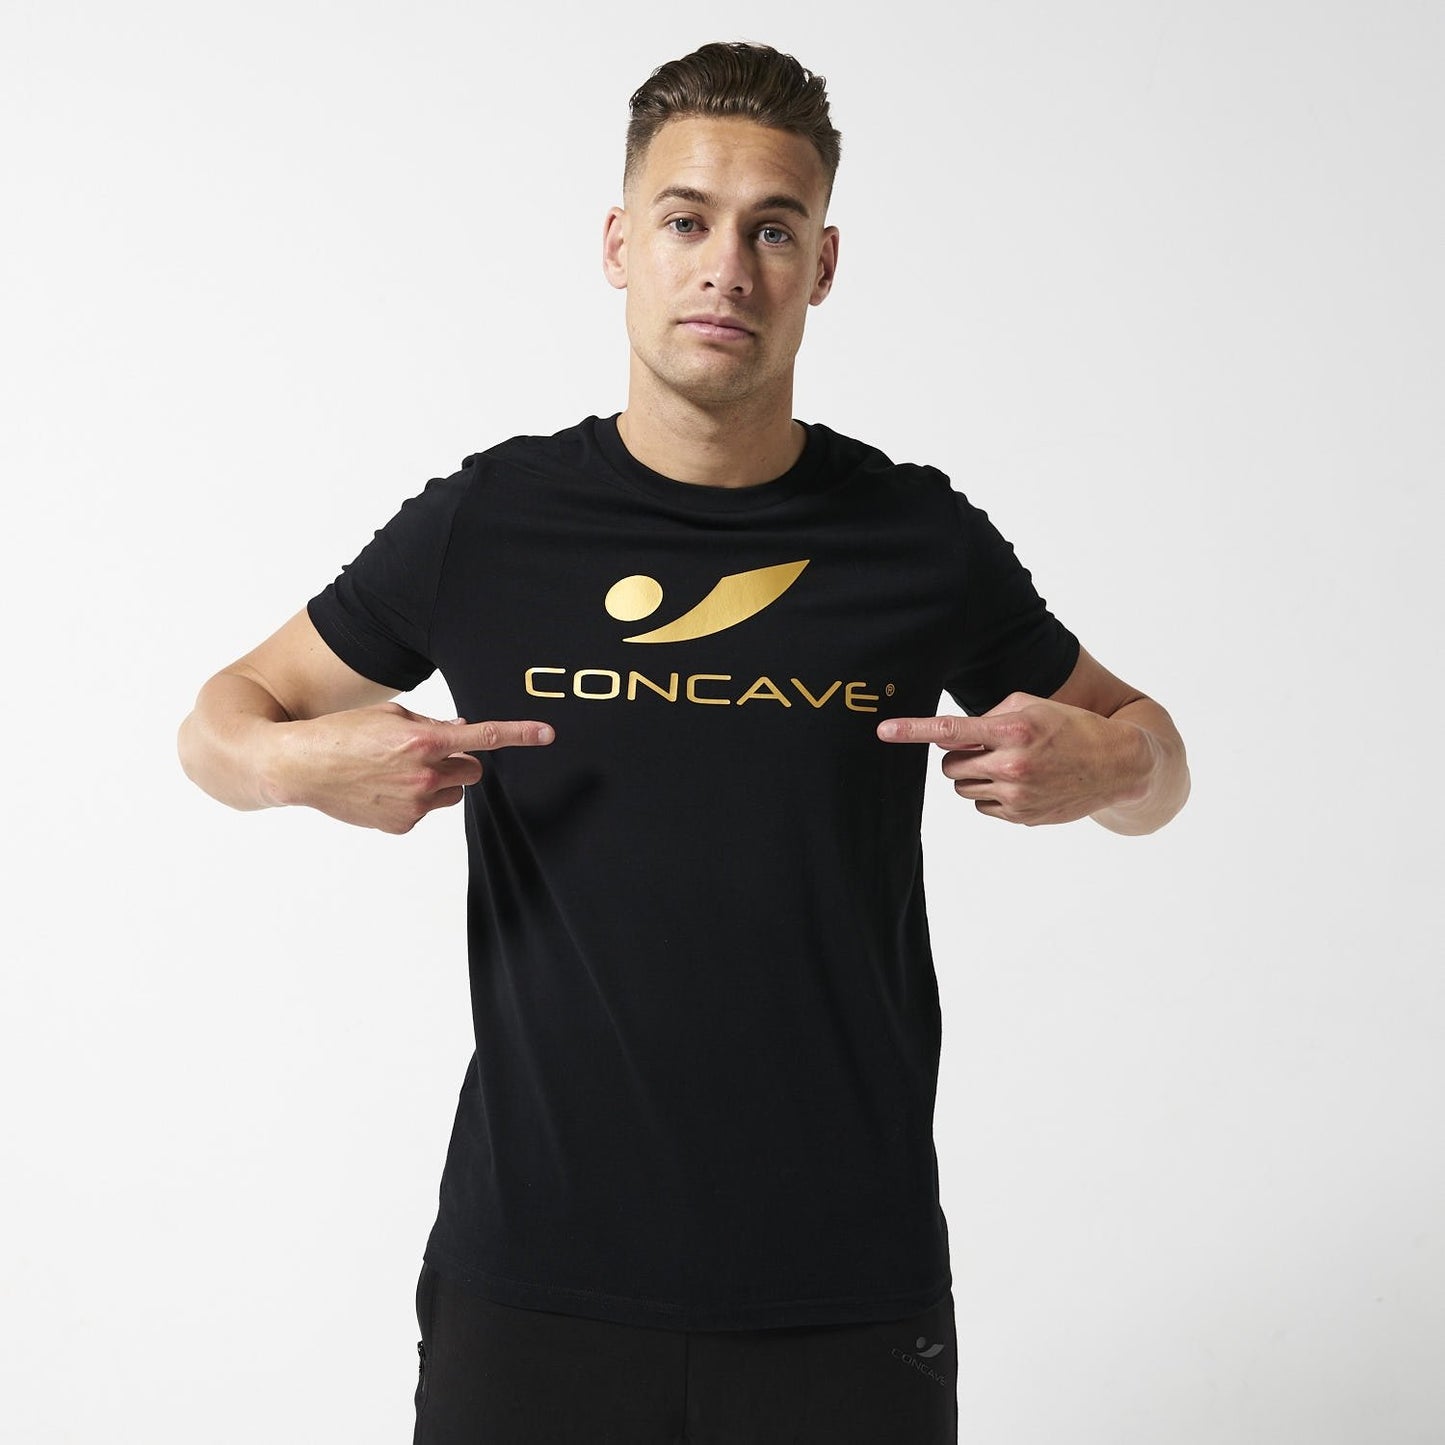 Concave T-Shirt - Black/Gold